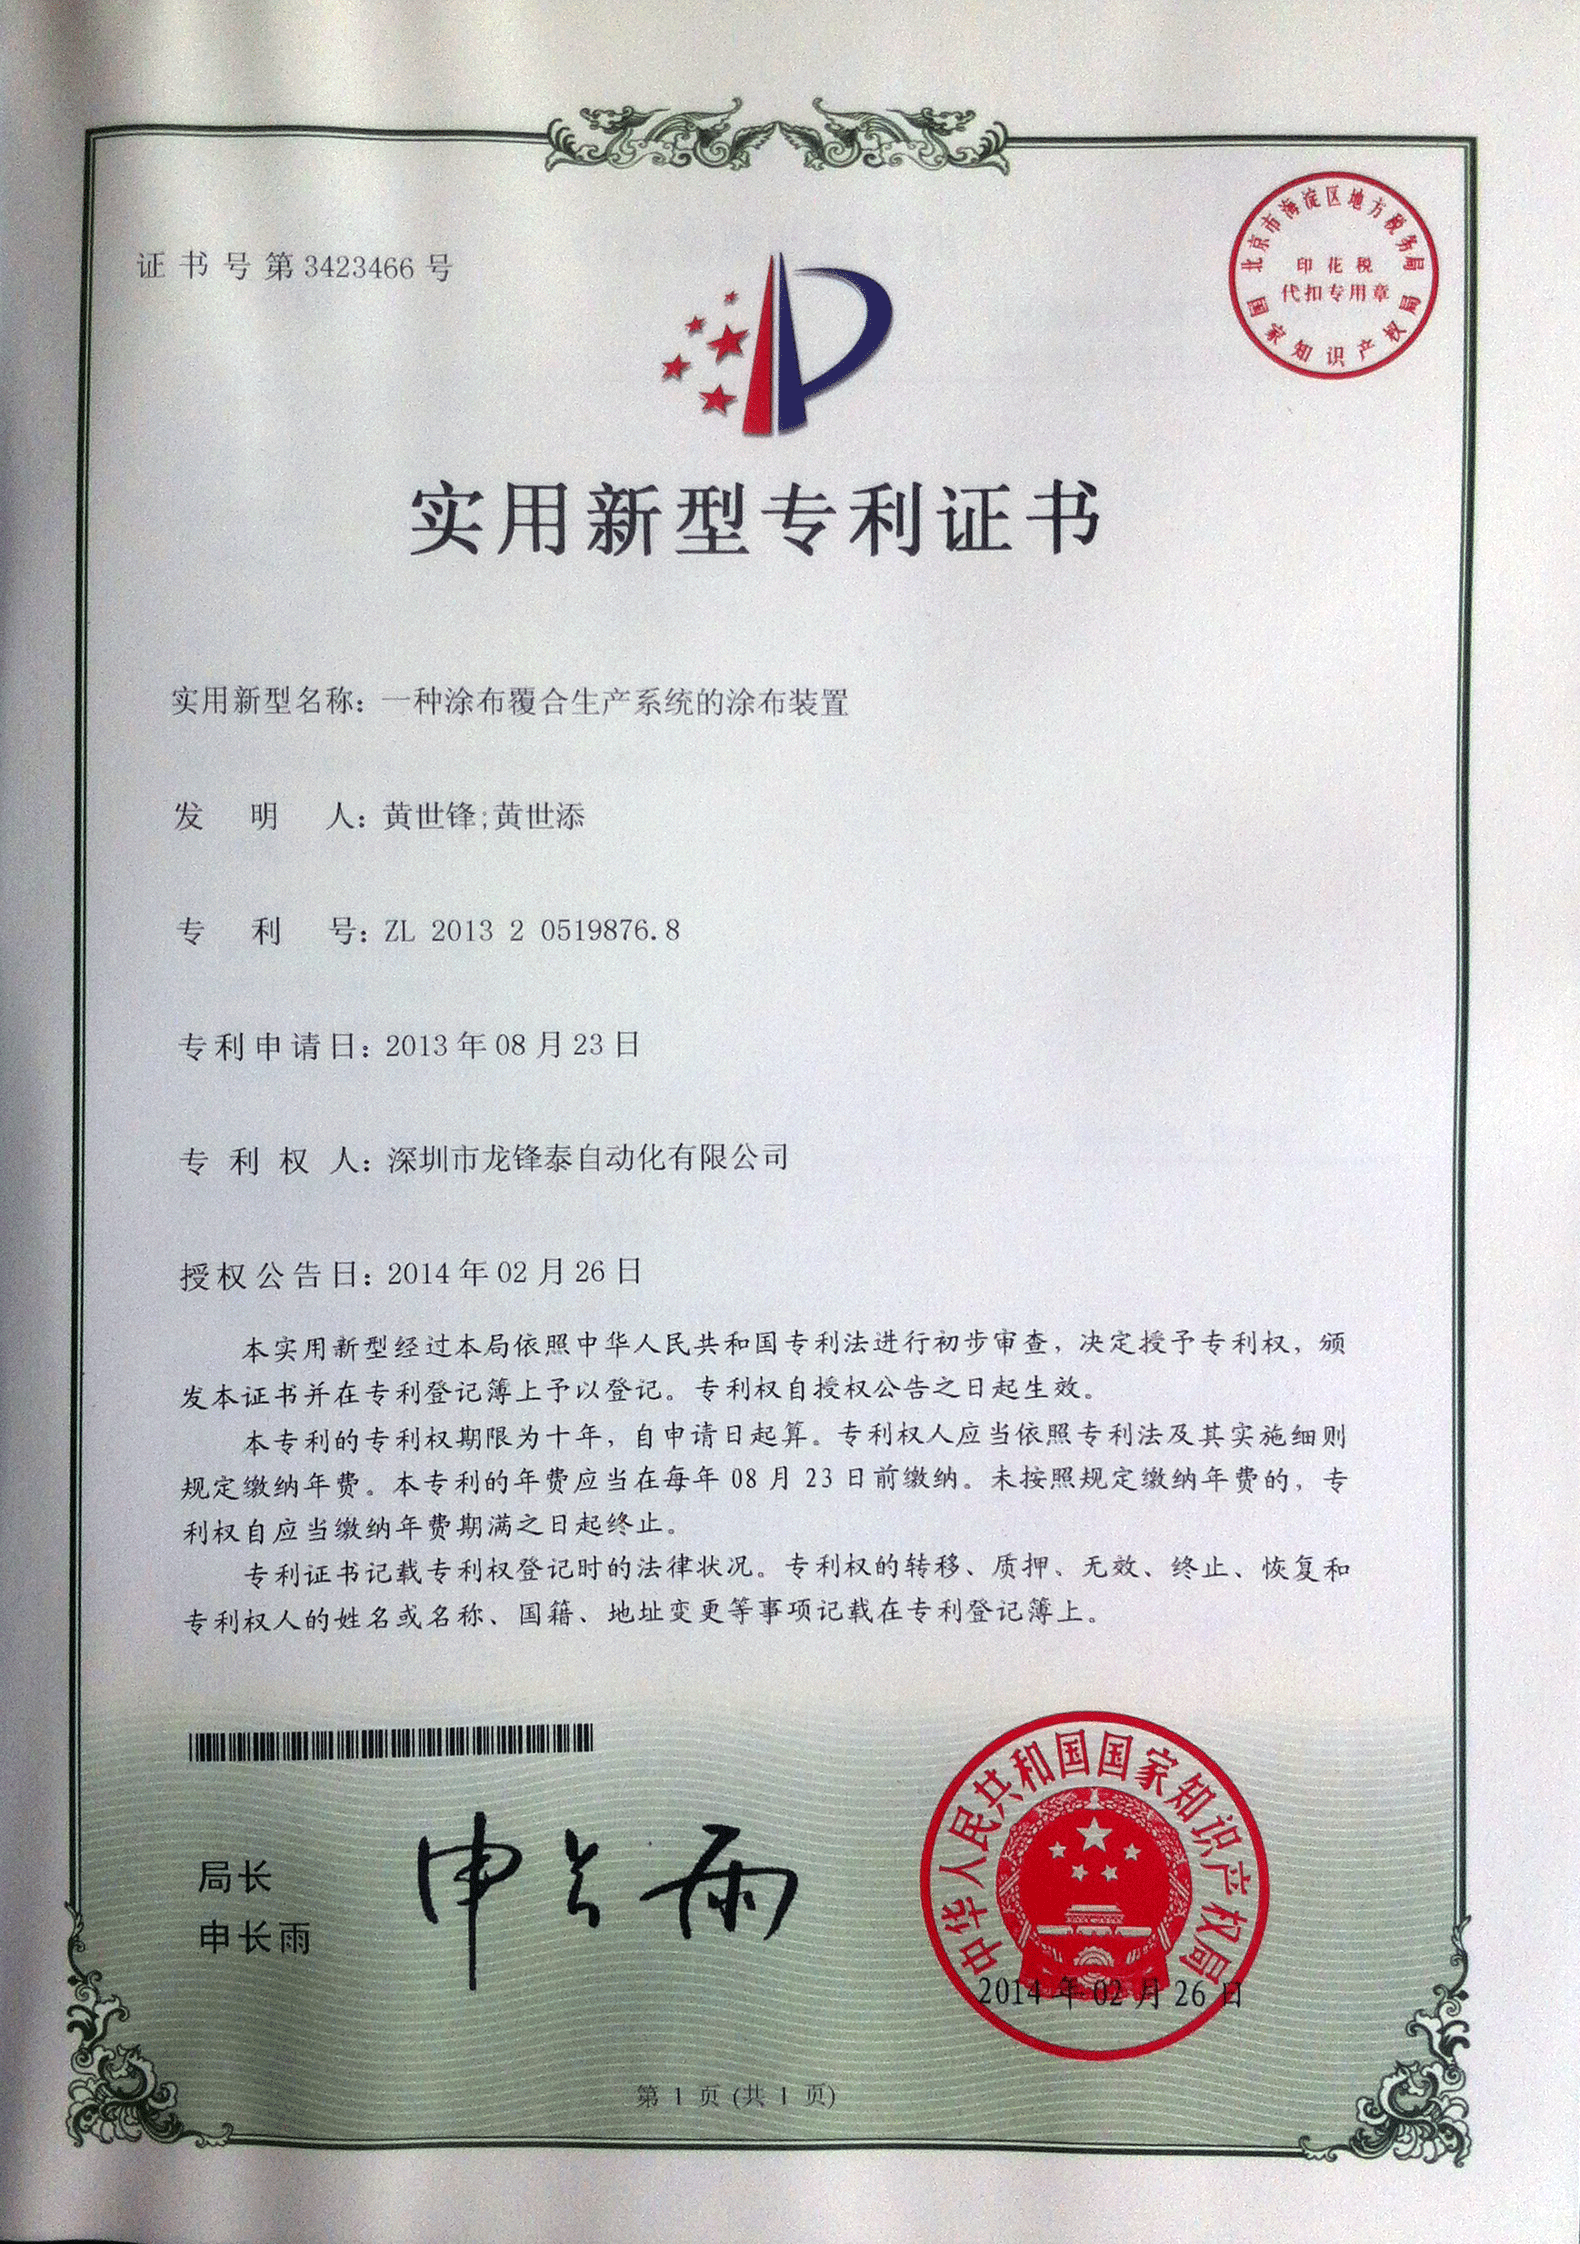 涂布覆合生产系统的涂布装置zhuanli证书